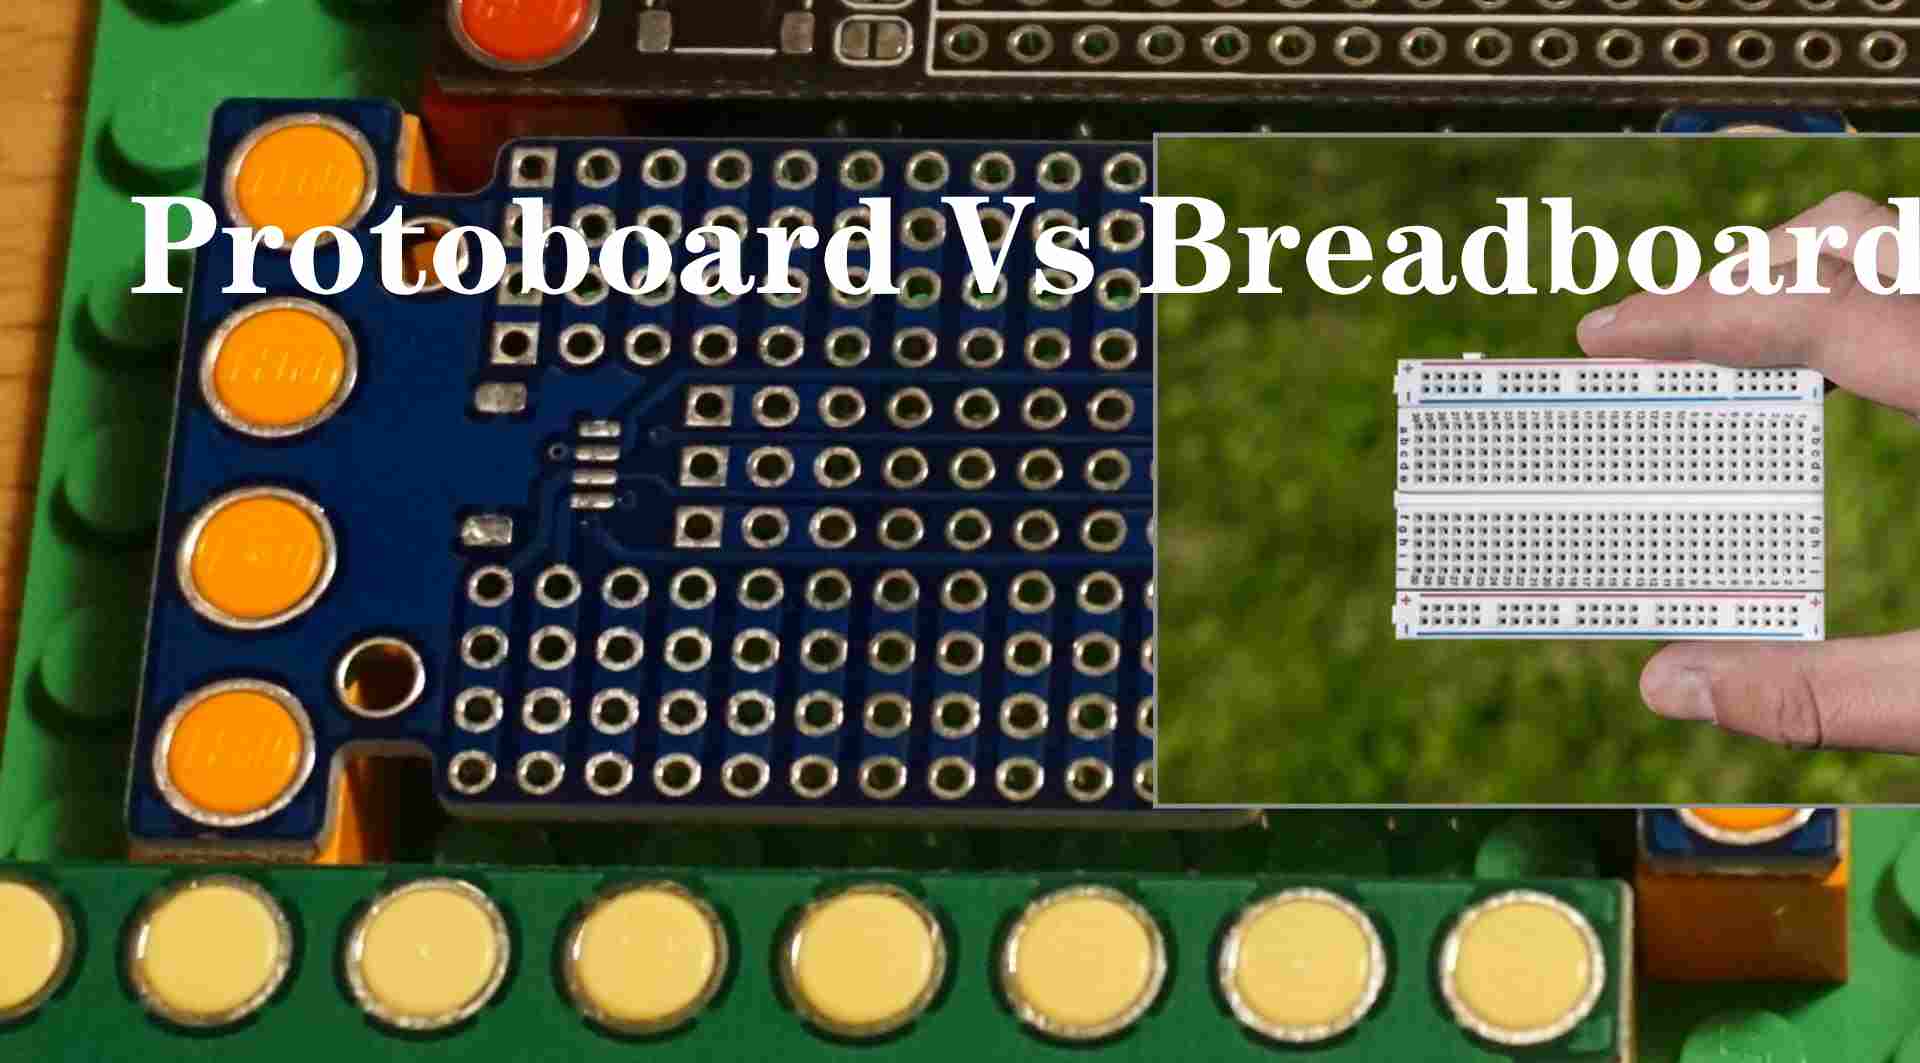 Protoboard-vs-Breadboard